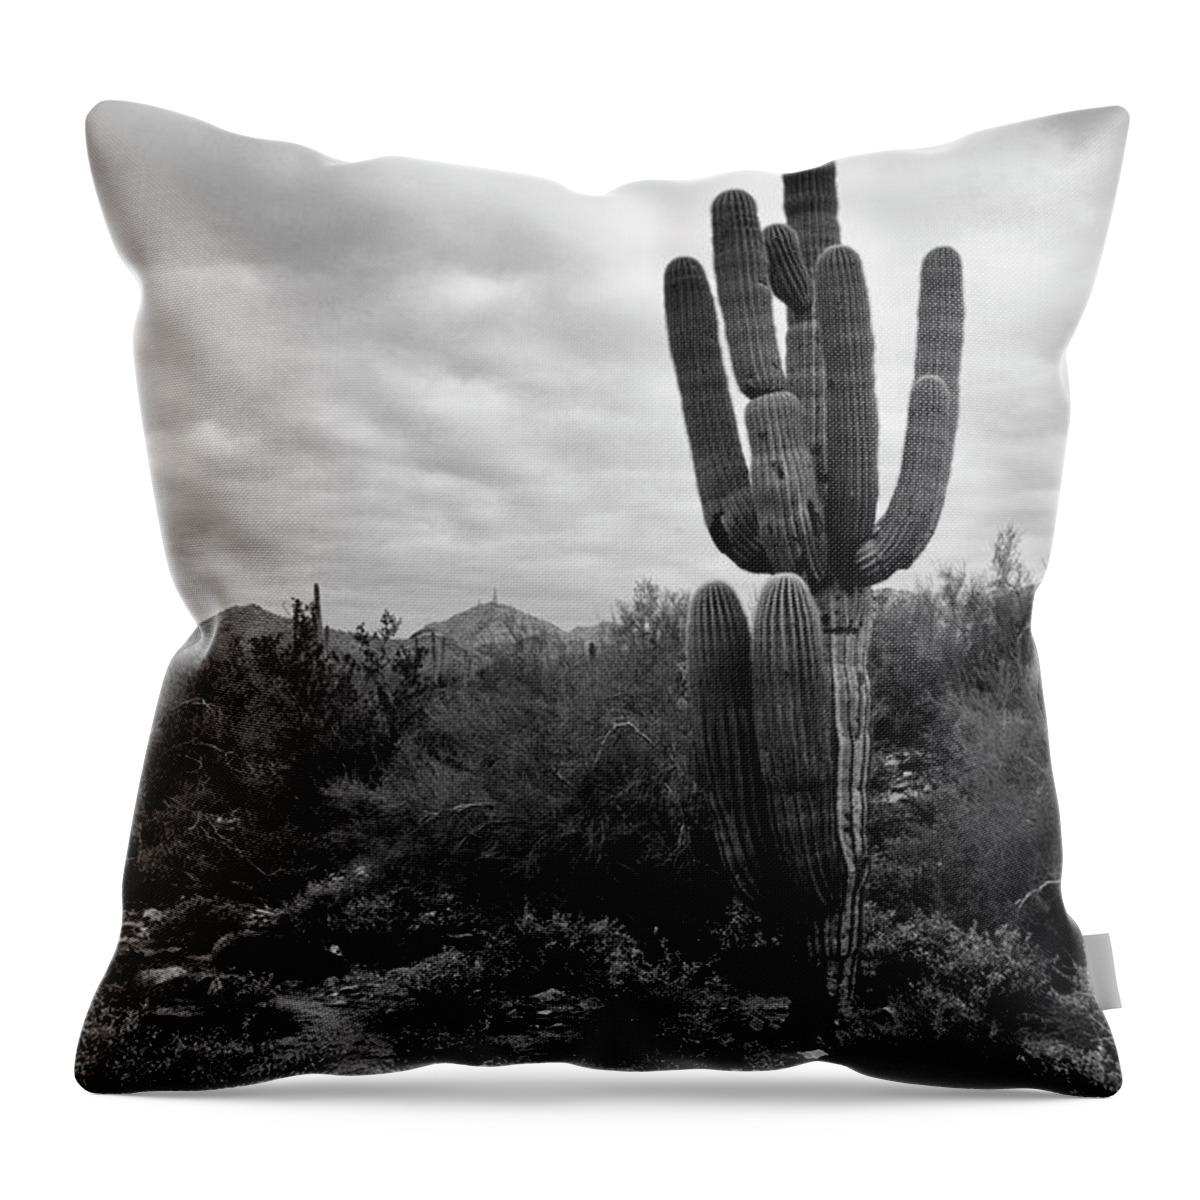 Saguaro Cactus Throw Pillow featuring the photograph Saguaro Cactus by Tamara Becker